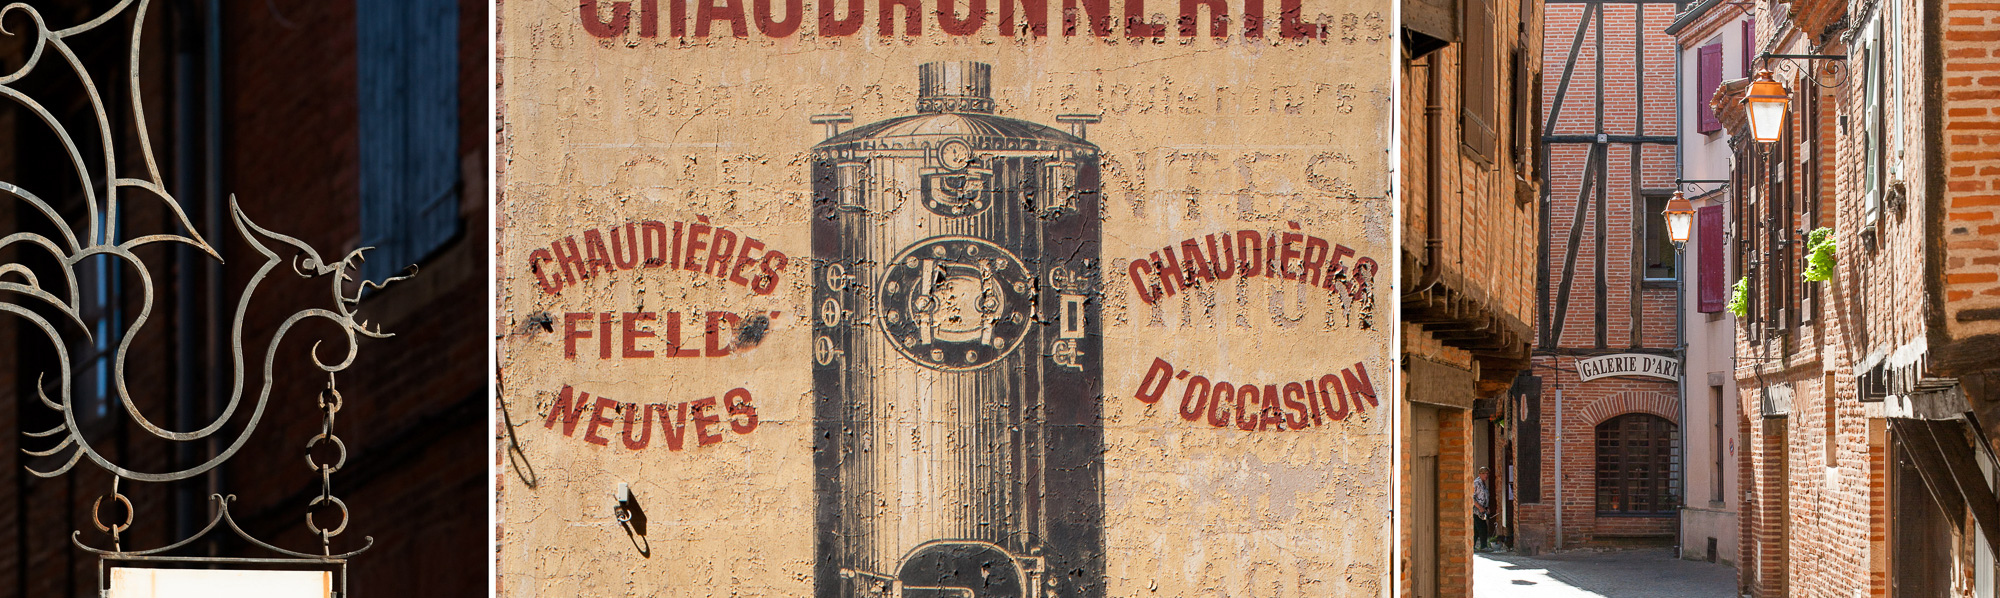 Enseigne, rue Puech Berenguier, ancienne publicité sur un mur, rue Roquelaure et rue Puech Berenguier.